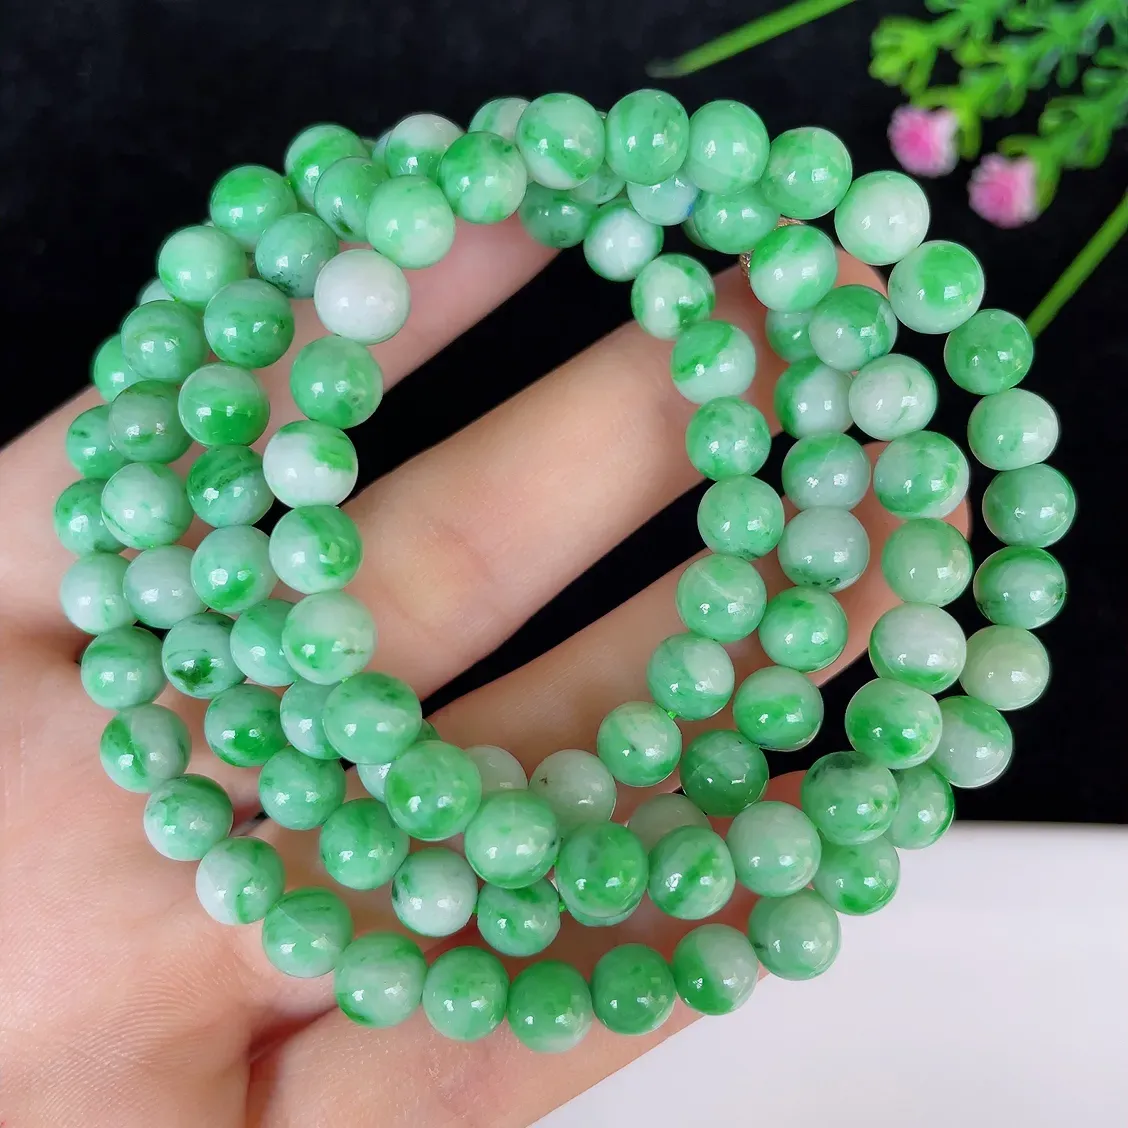 水润飘绿白底青圆珠翡翠项链#110-4544，天然翡翠A货，尺寸取一6.3mm，质地细腻，色泽鲜艳，绿色迷人，佩戴效果佳！！